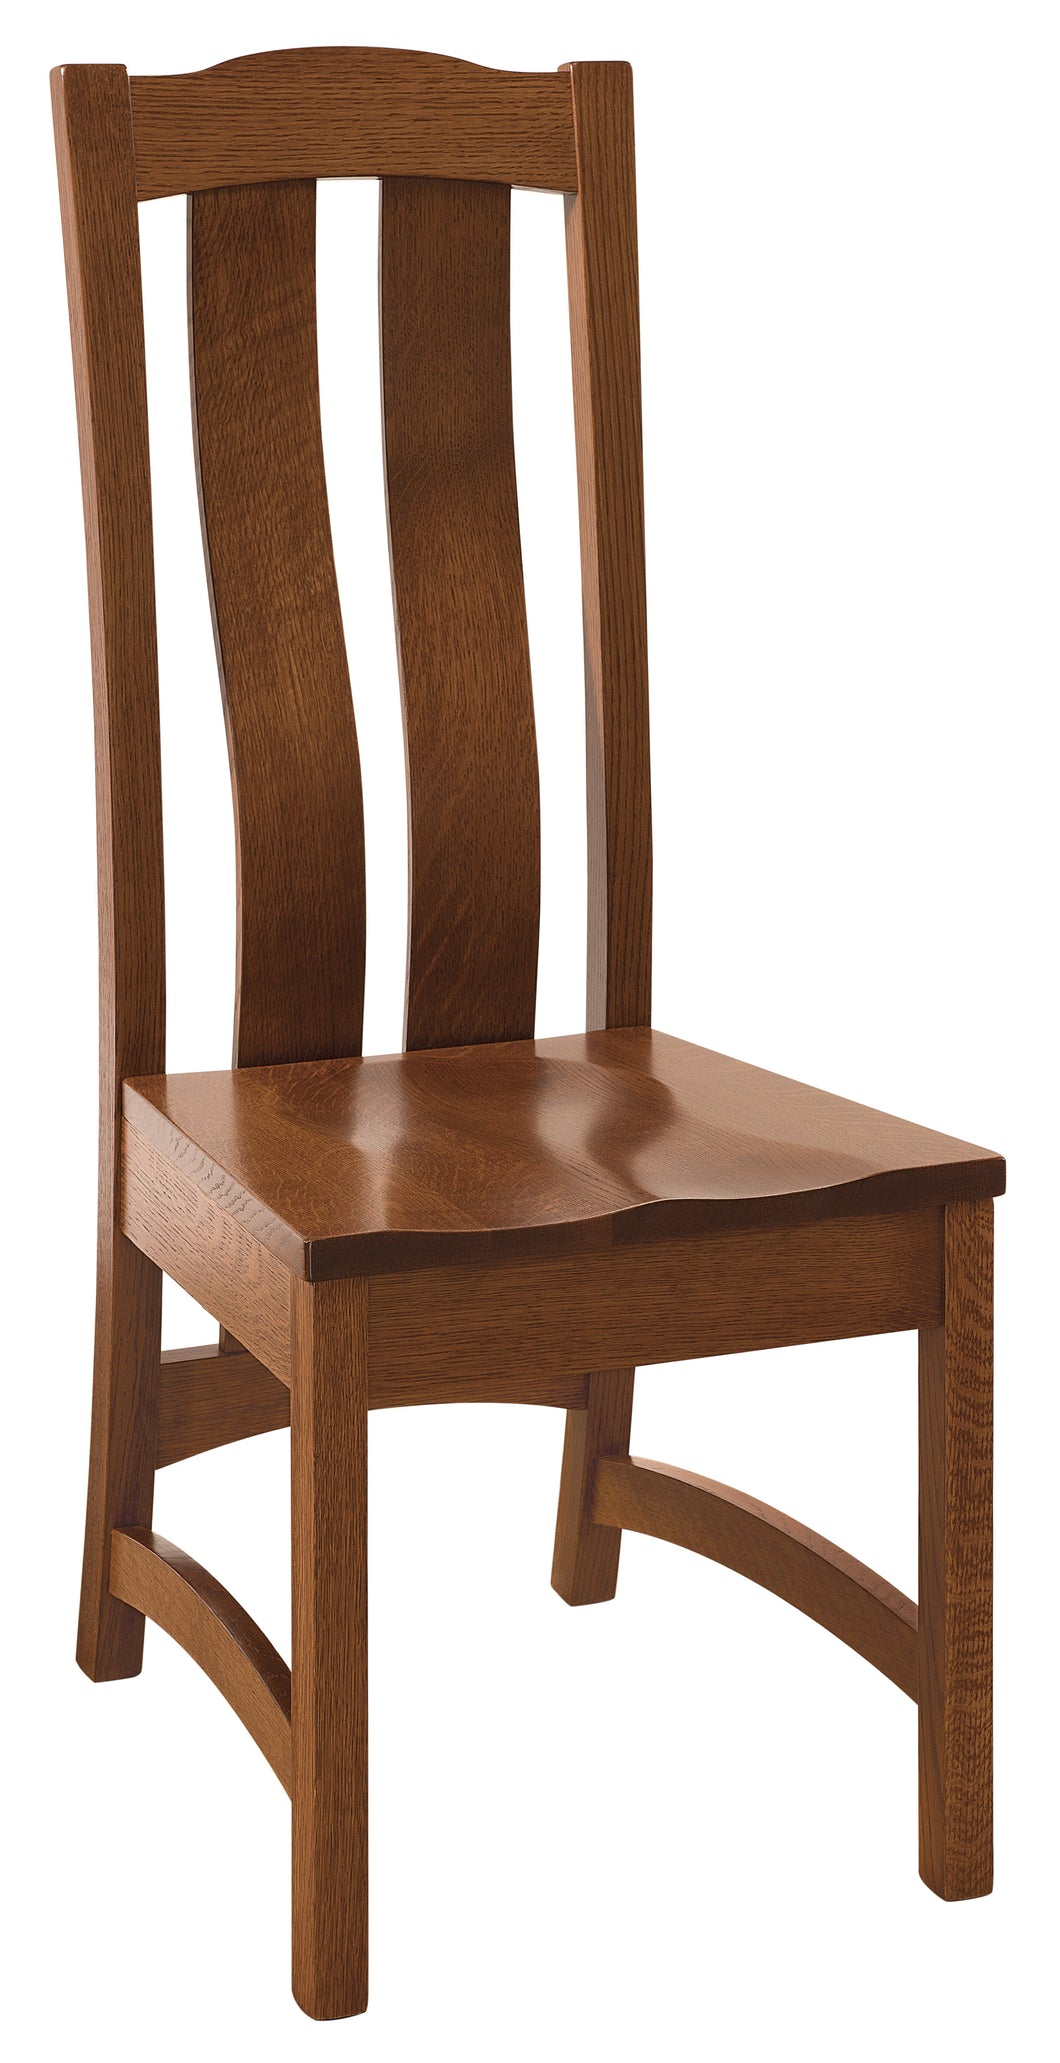 Kensington Chair